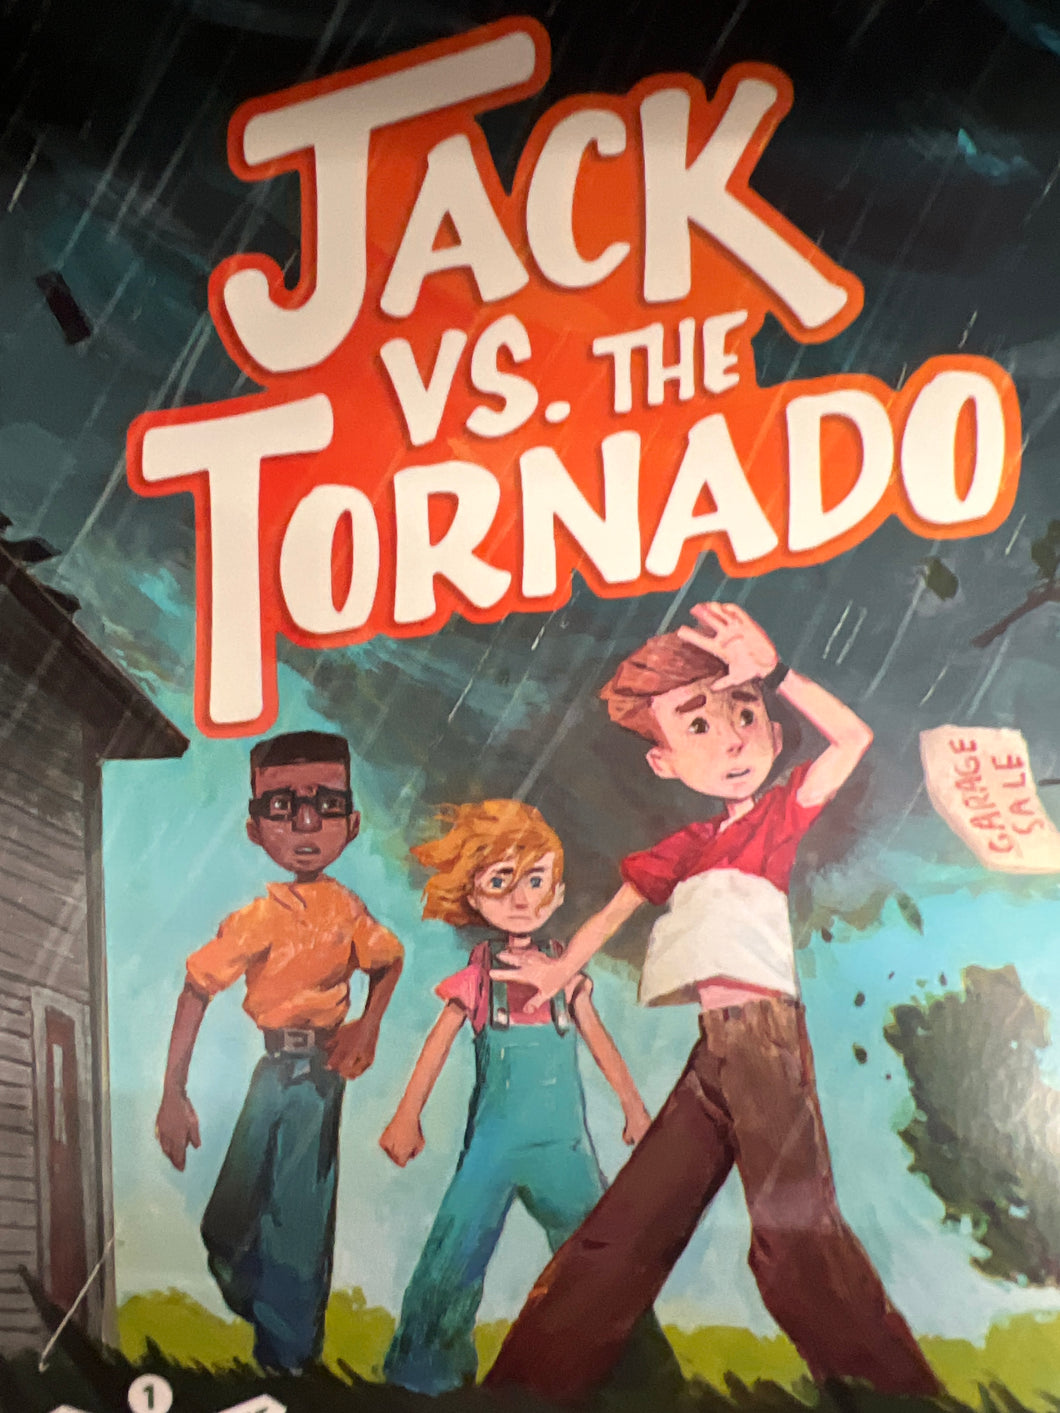 Jack vs. The Tornado